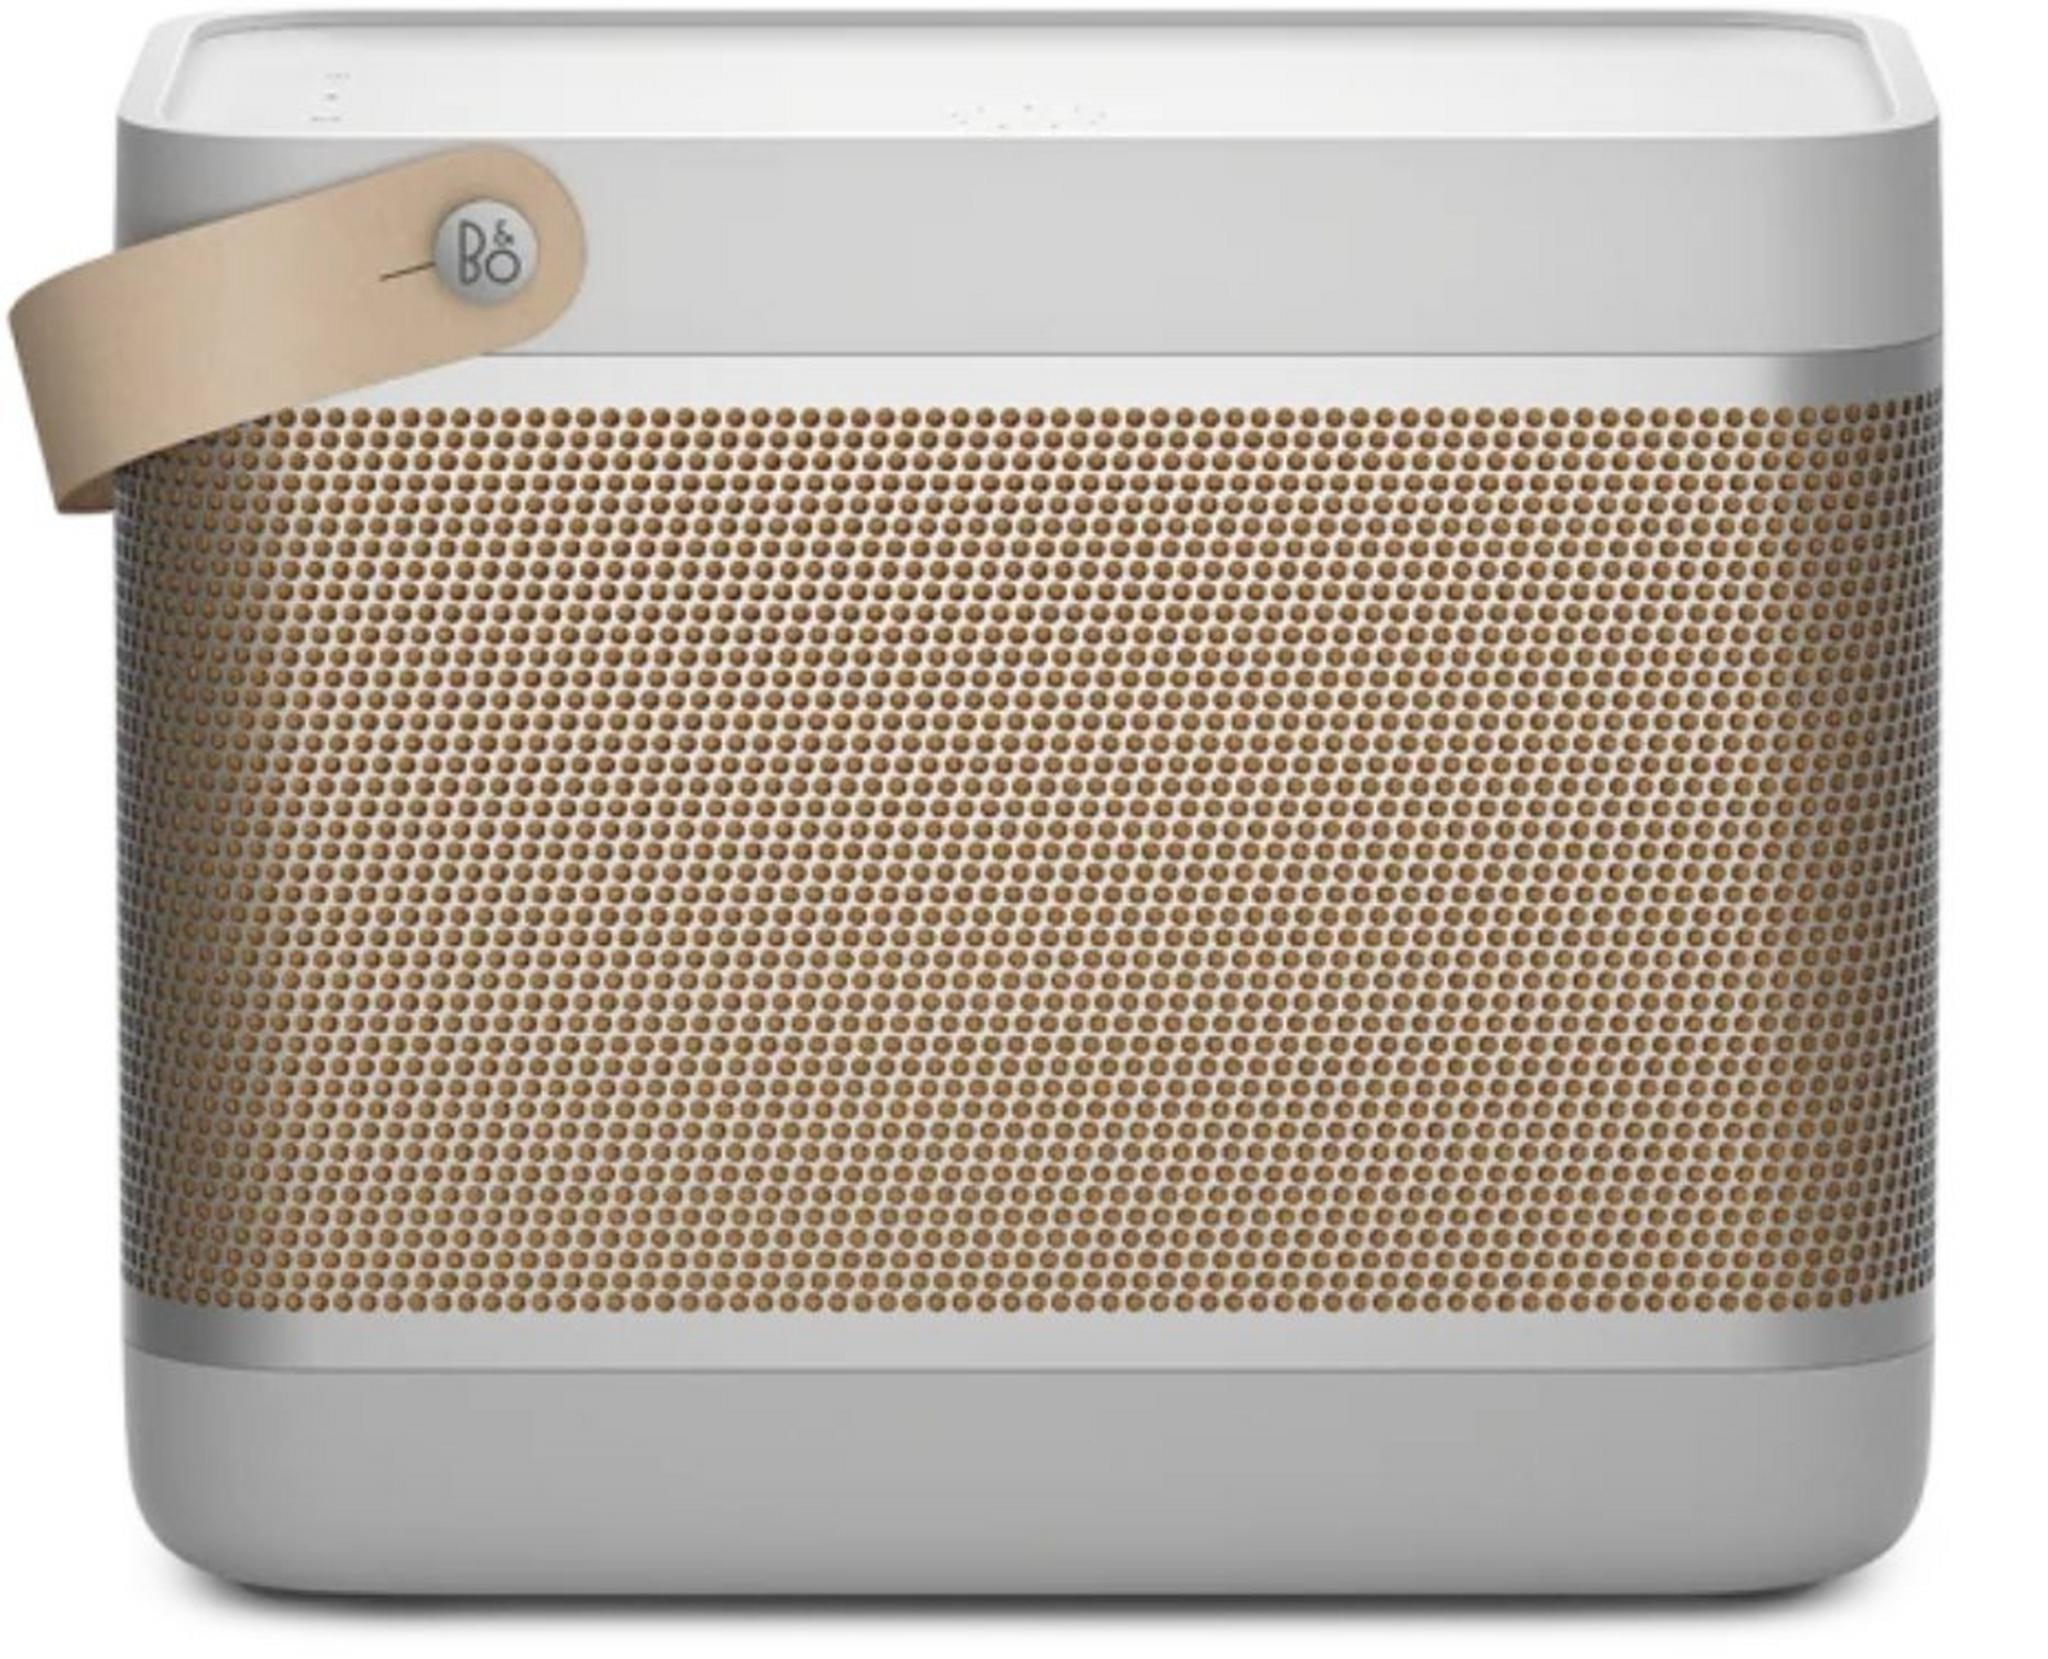 BO & Play Beolit 20 Wireless Speaker - Grey